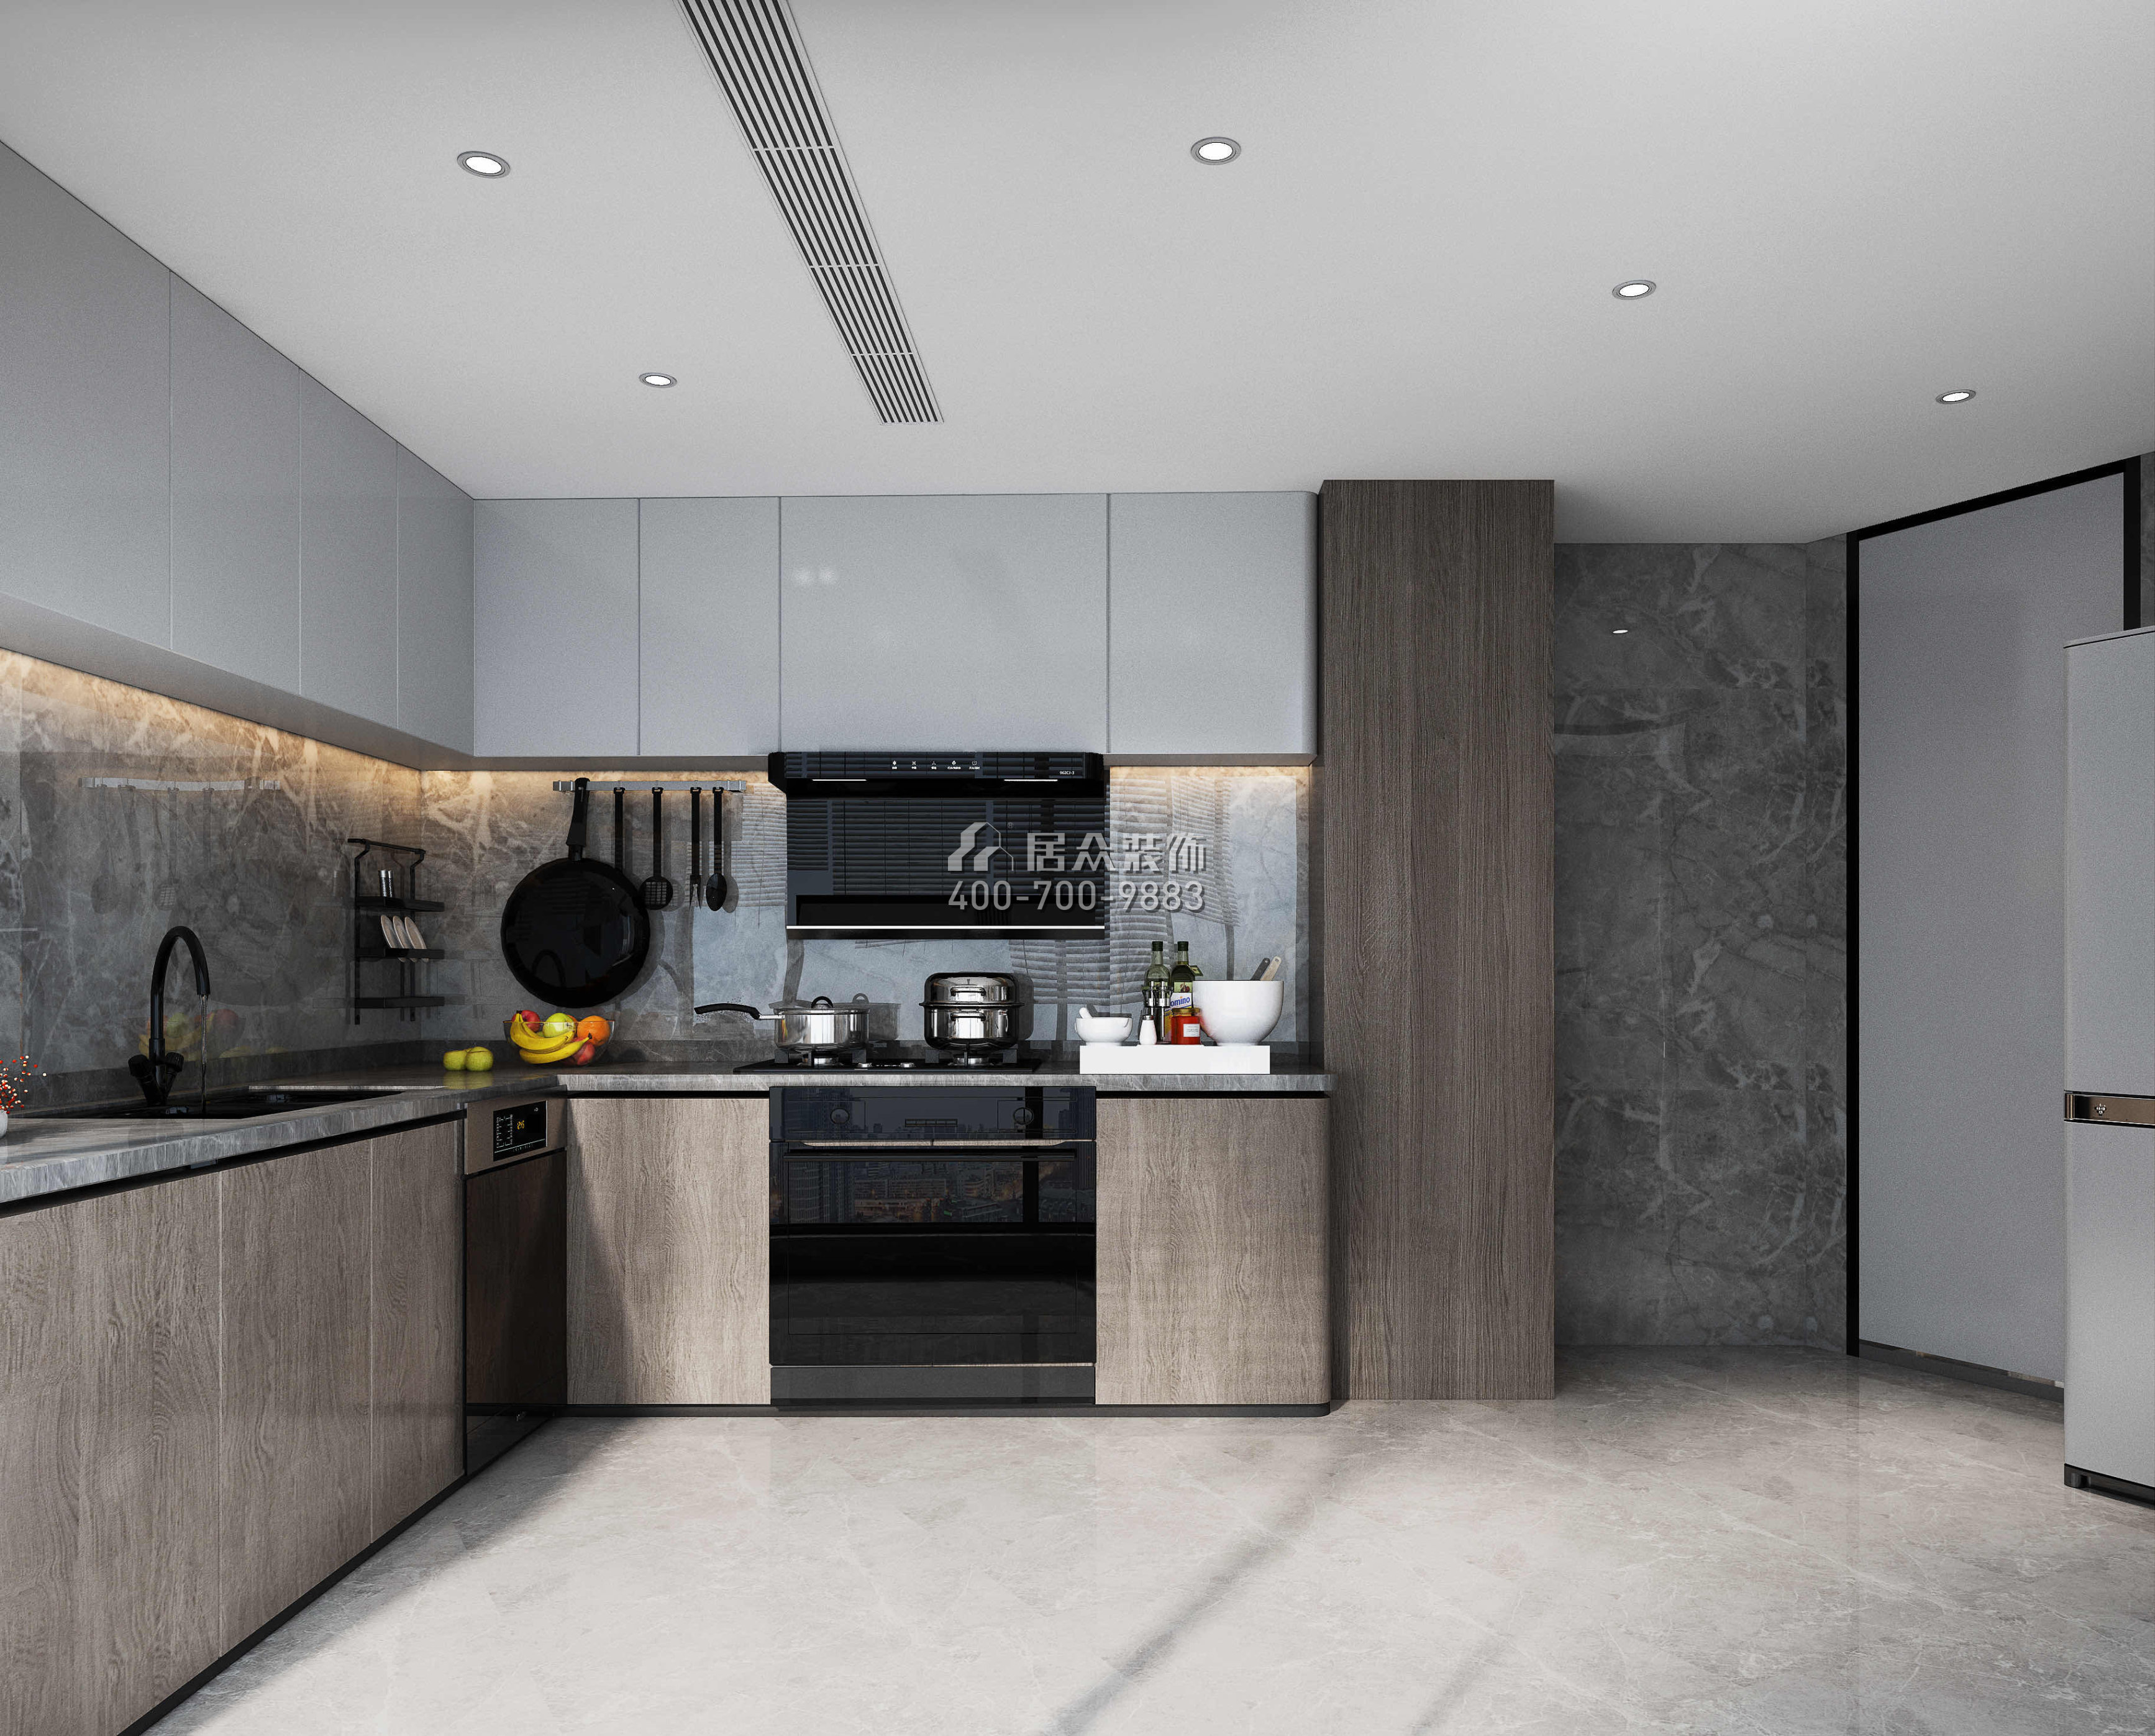 金泓凯旋城185平方米现代简约风格平层户型厨房装修效果图